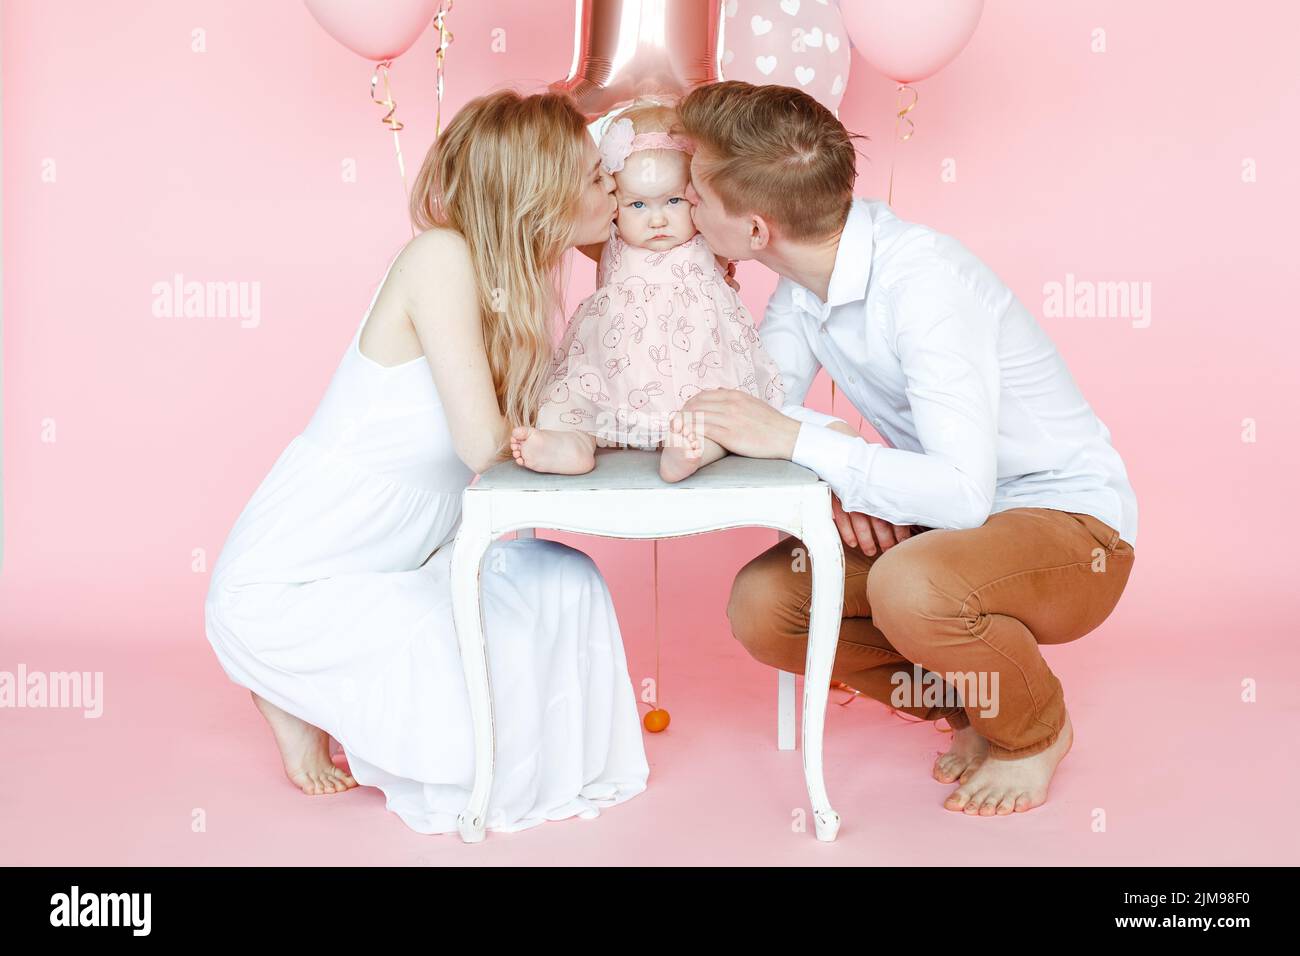 Calme, aimant toute la famille de l'homme, femme embrassant un enfant d'un an en robe rose s'asseoir sur la chaise et célébrer la fête d'anniversaire Banque D'Images